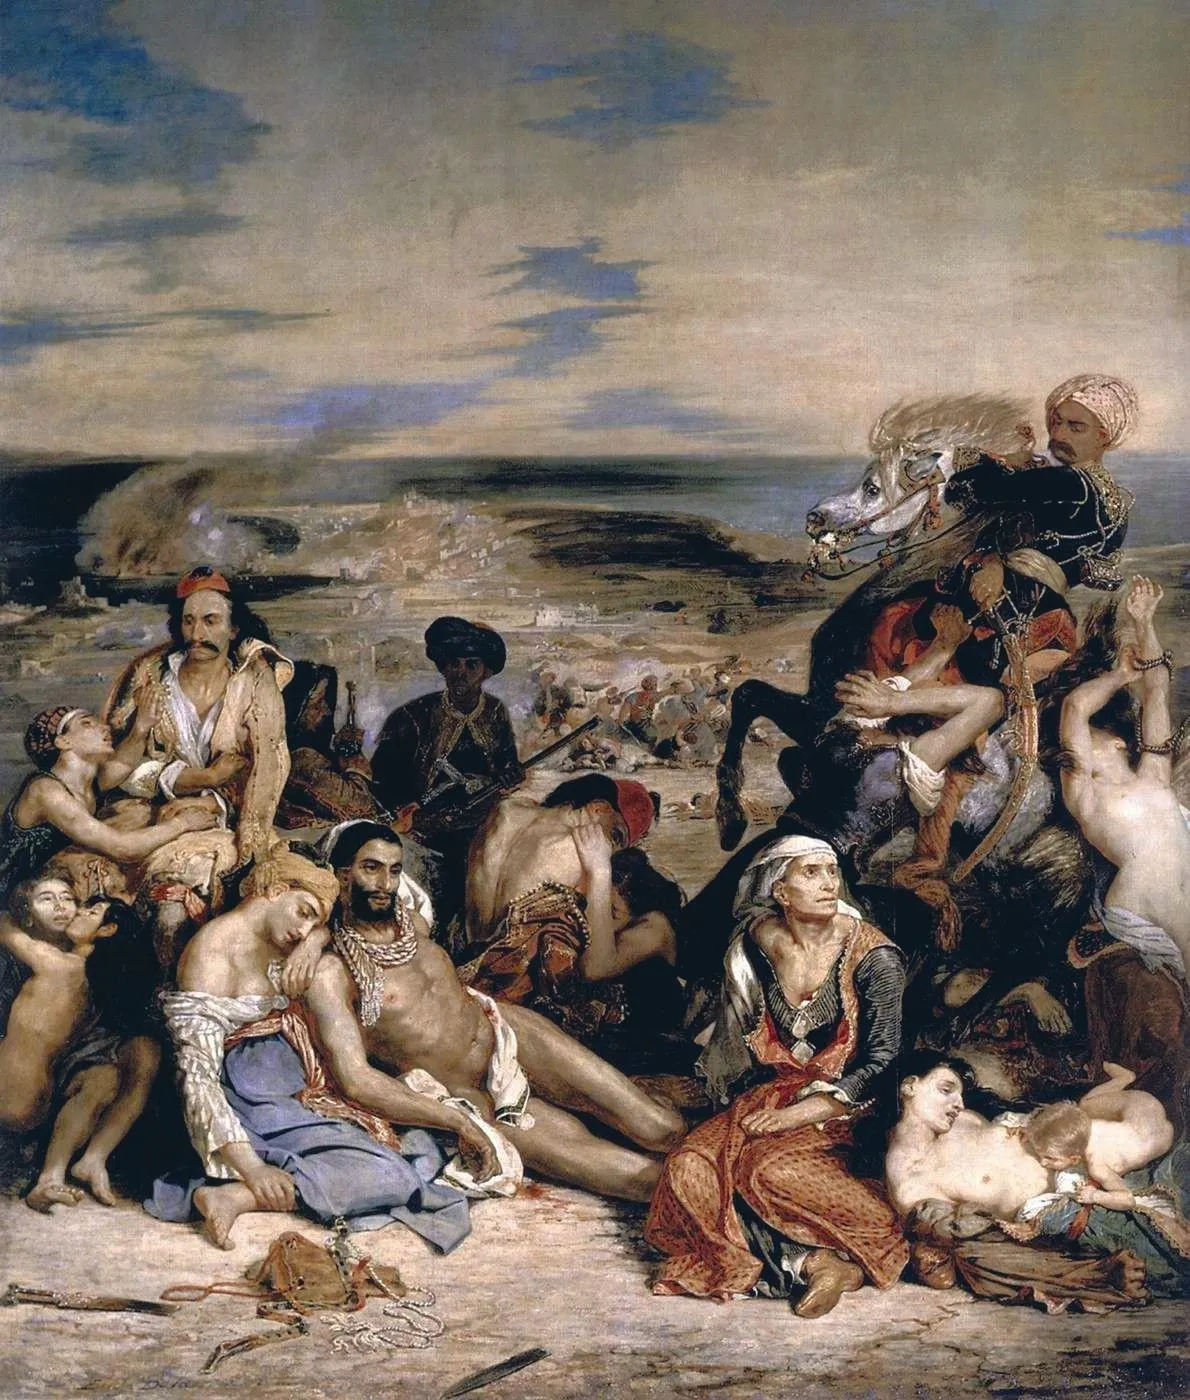 Eugène Delacroix, Scène des massacres de Scio, 1824, huile sur toile, 419 x 354 cm, musée du Louvre, Paris.